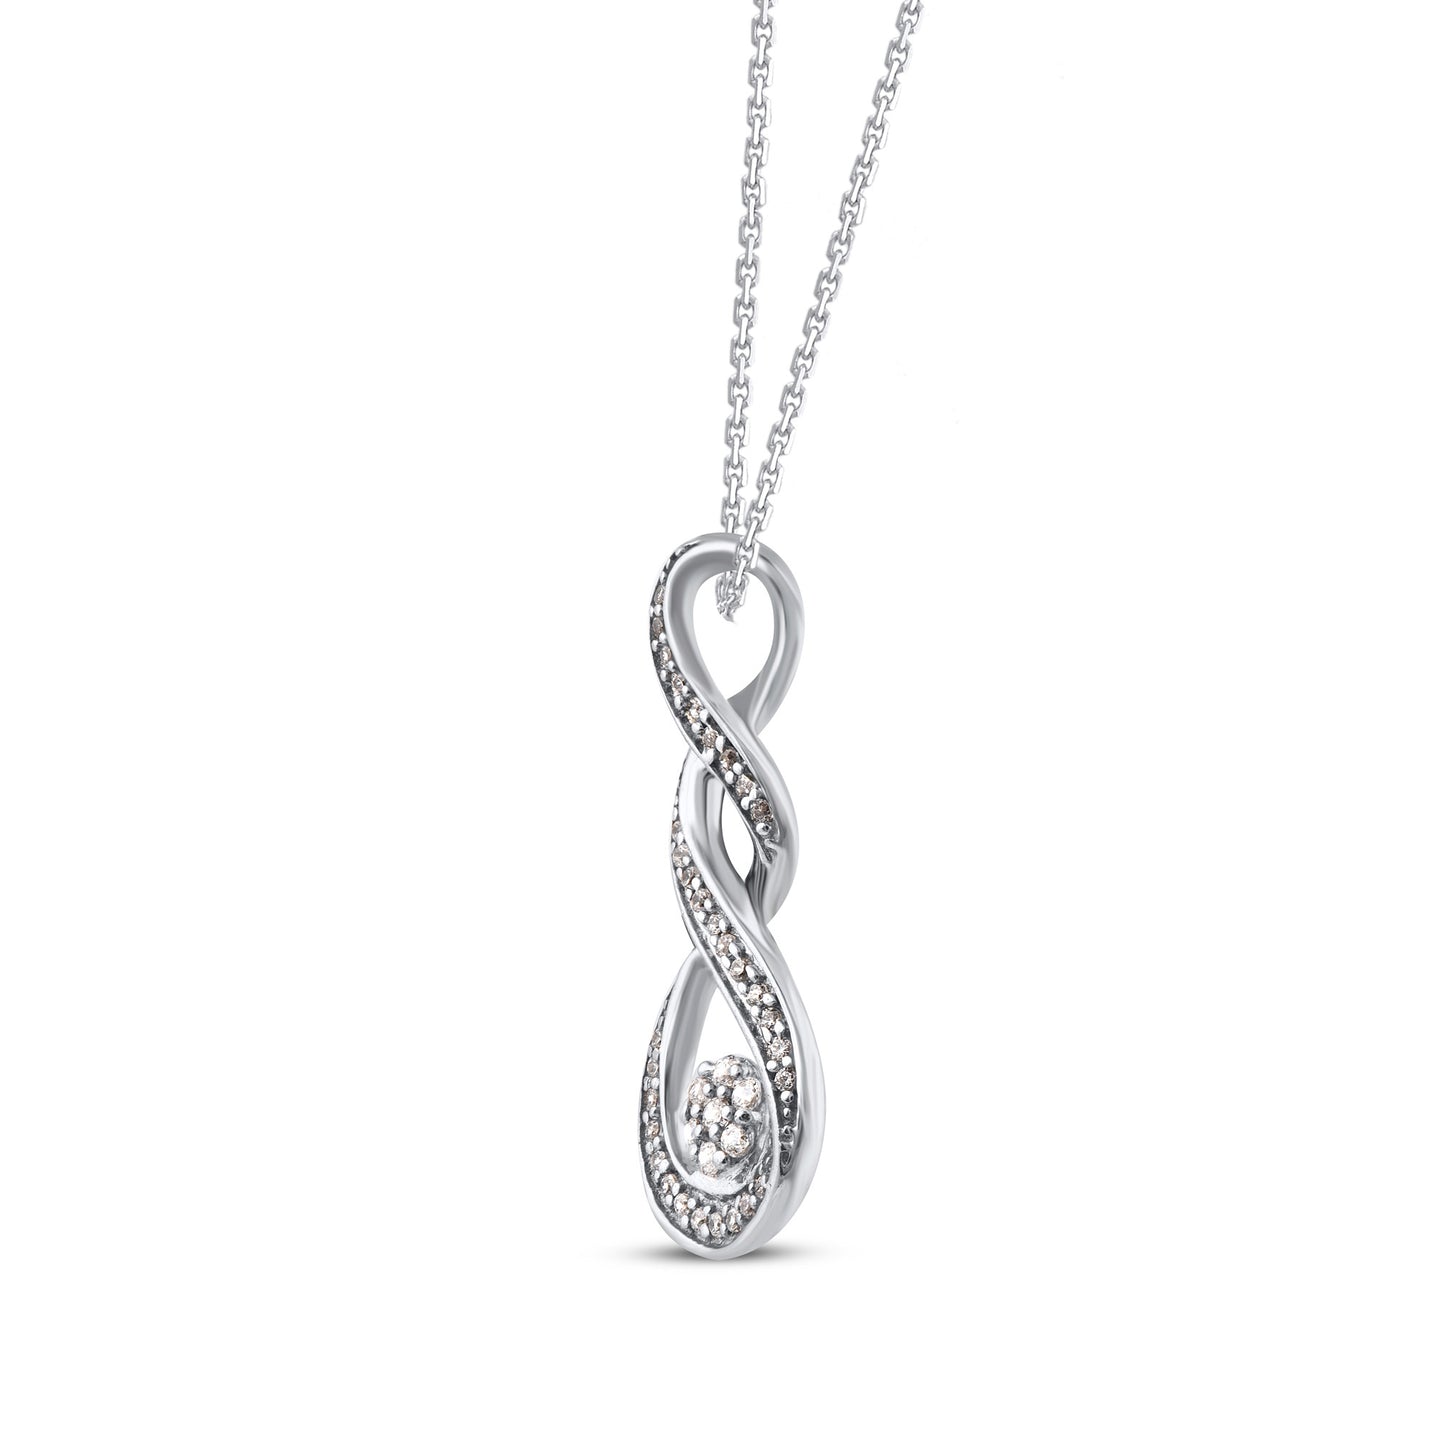 Swirl Infinity Pendant in 925 Sterling Silver